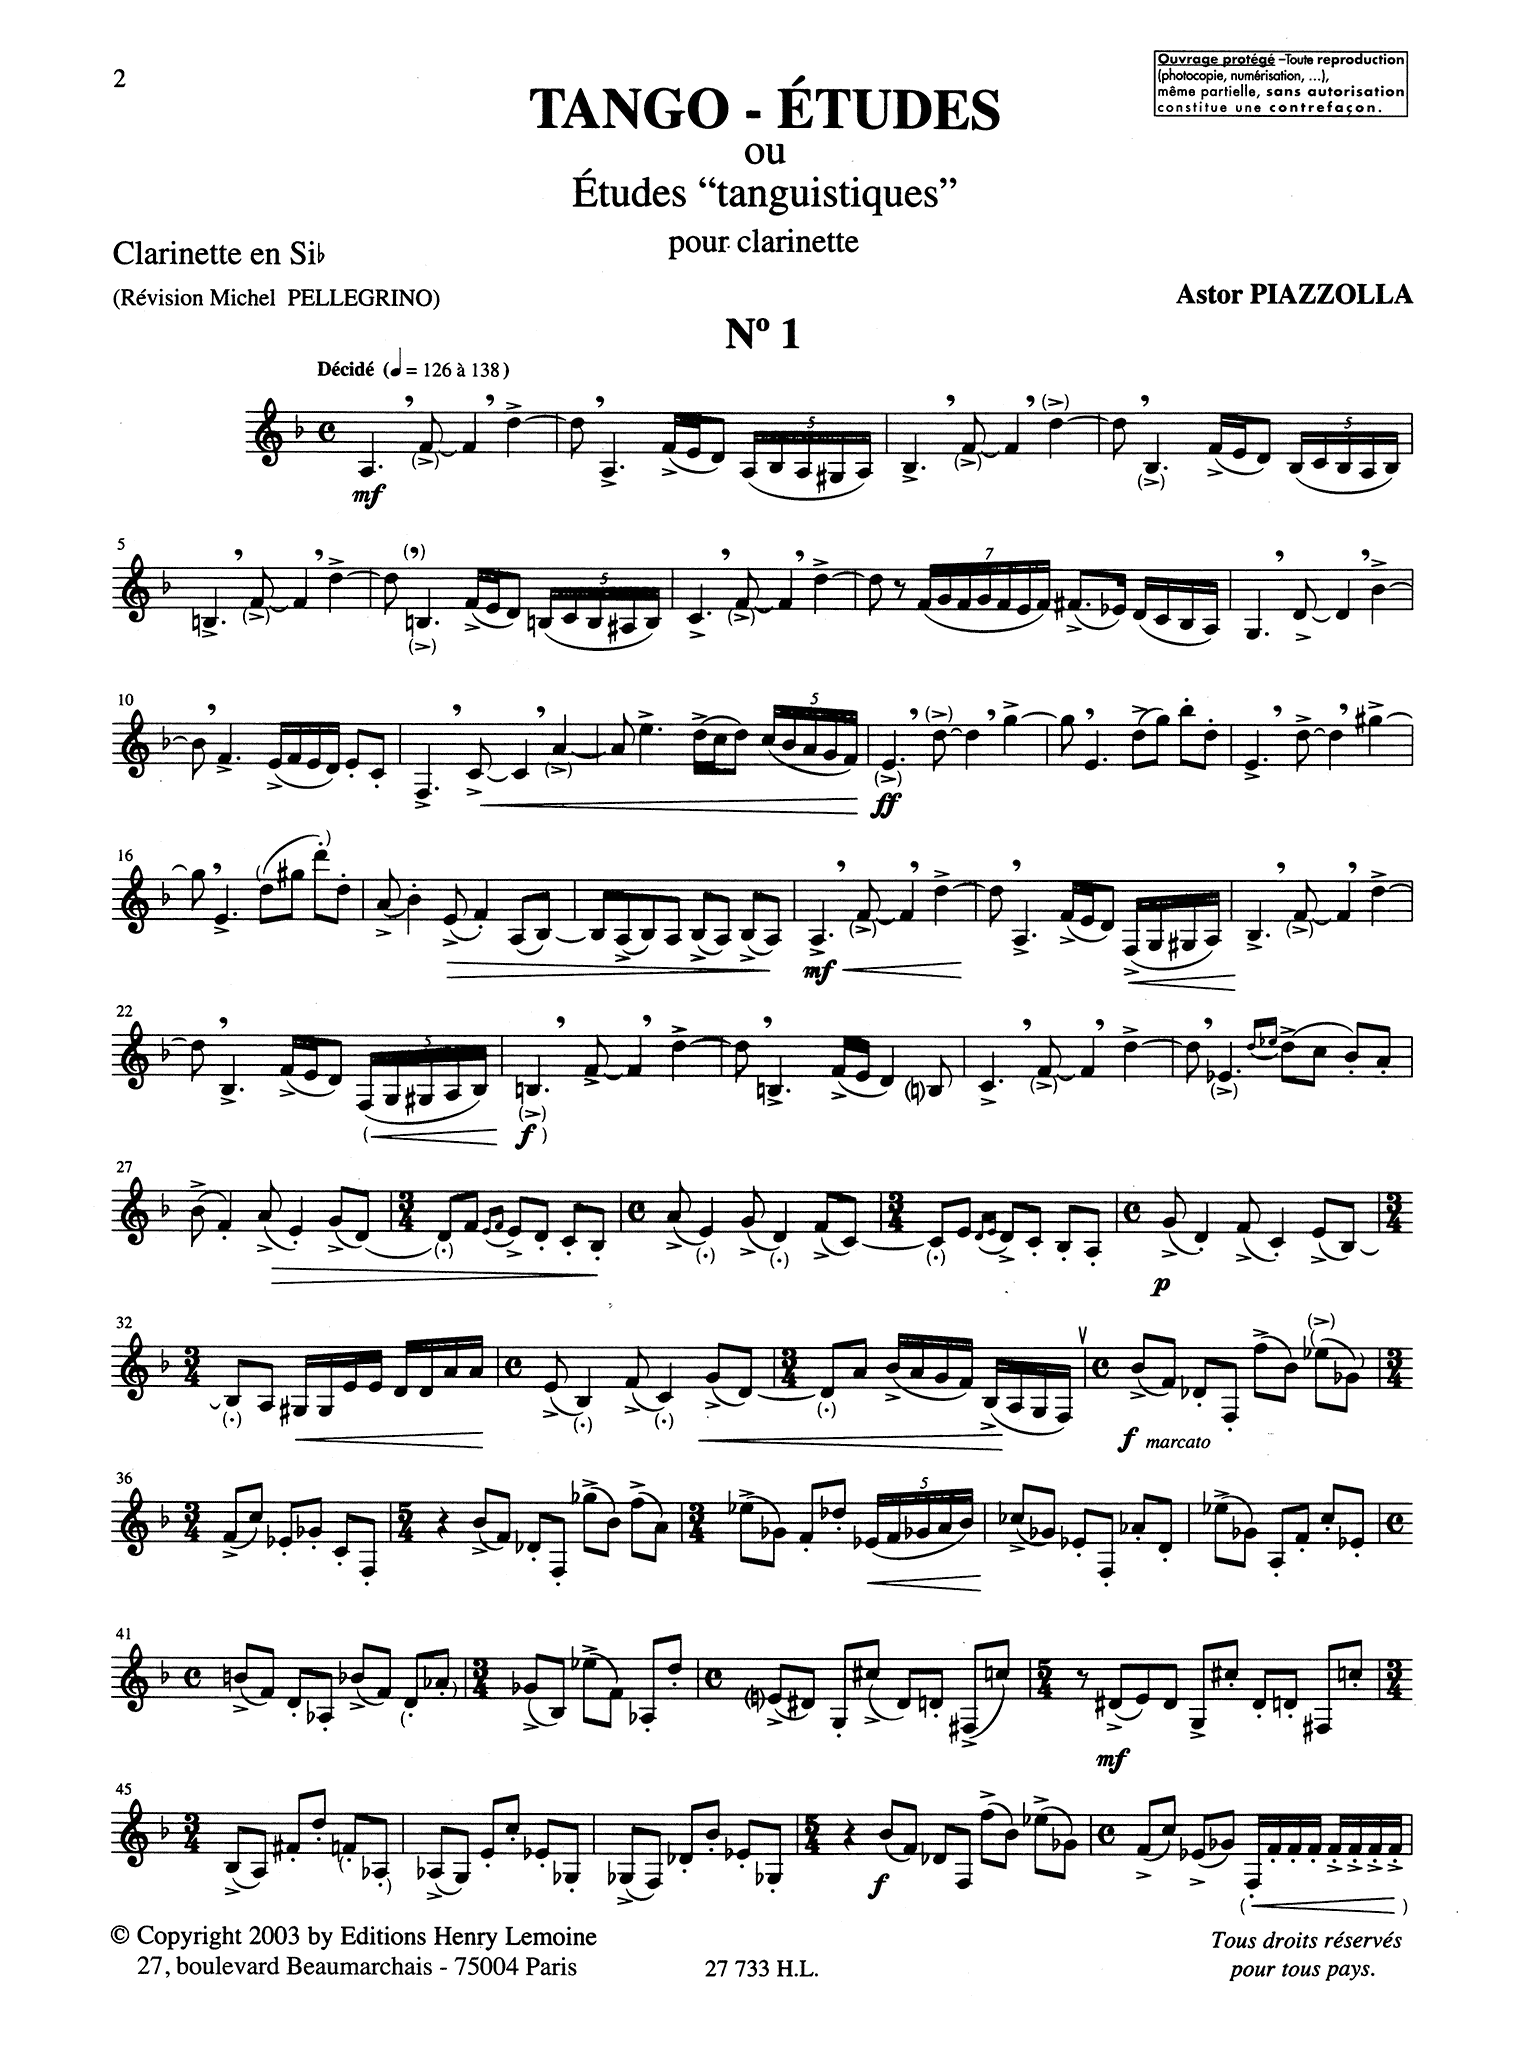 Tango-Études Clarinet part